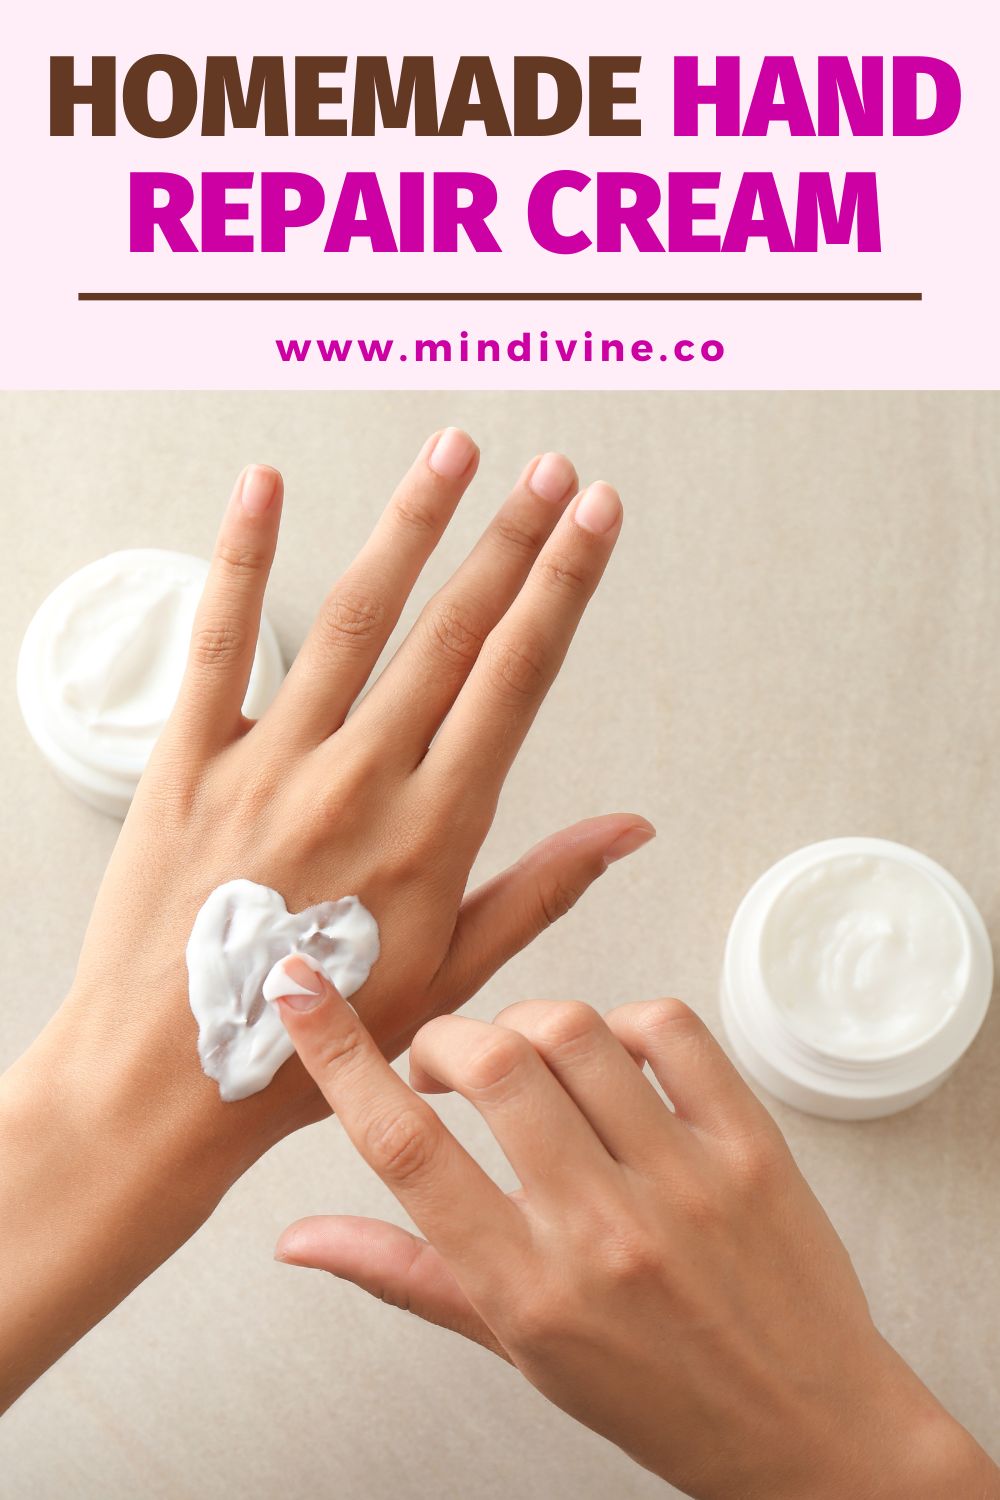 Try this homemade hand repair cream.